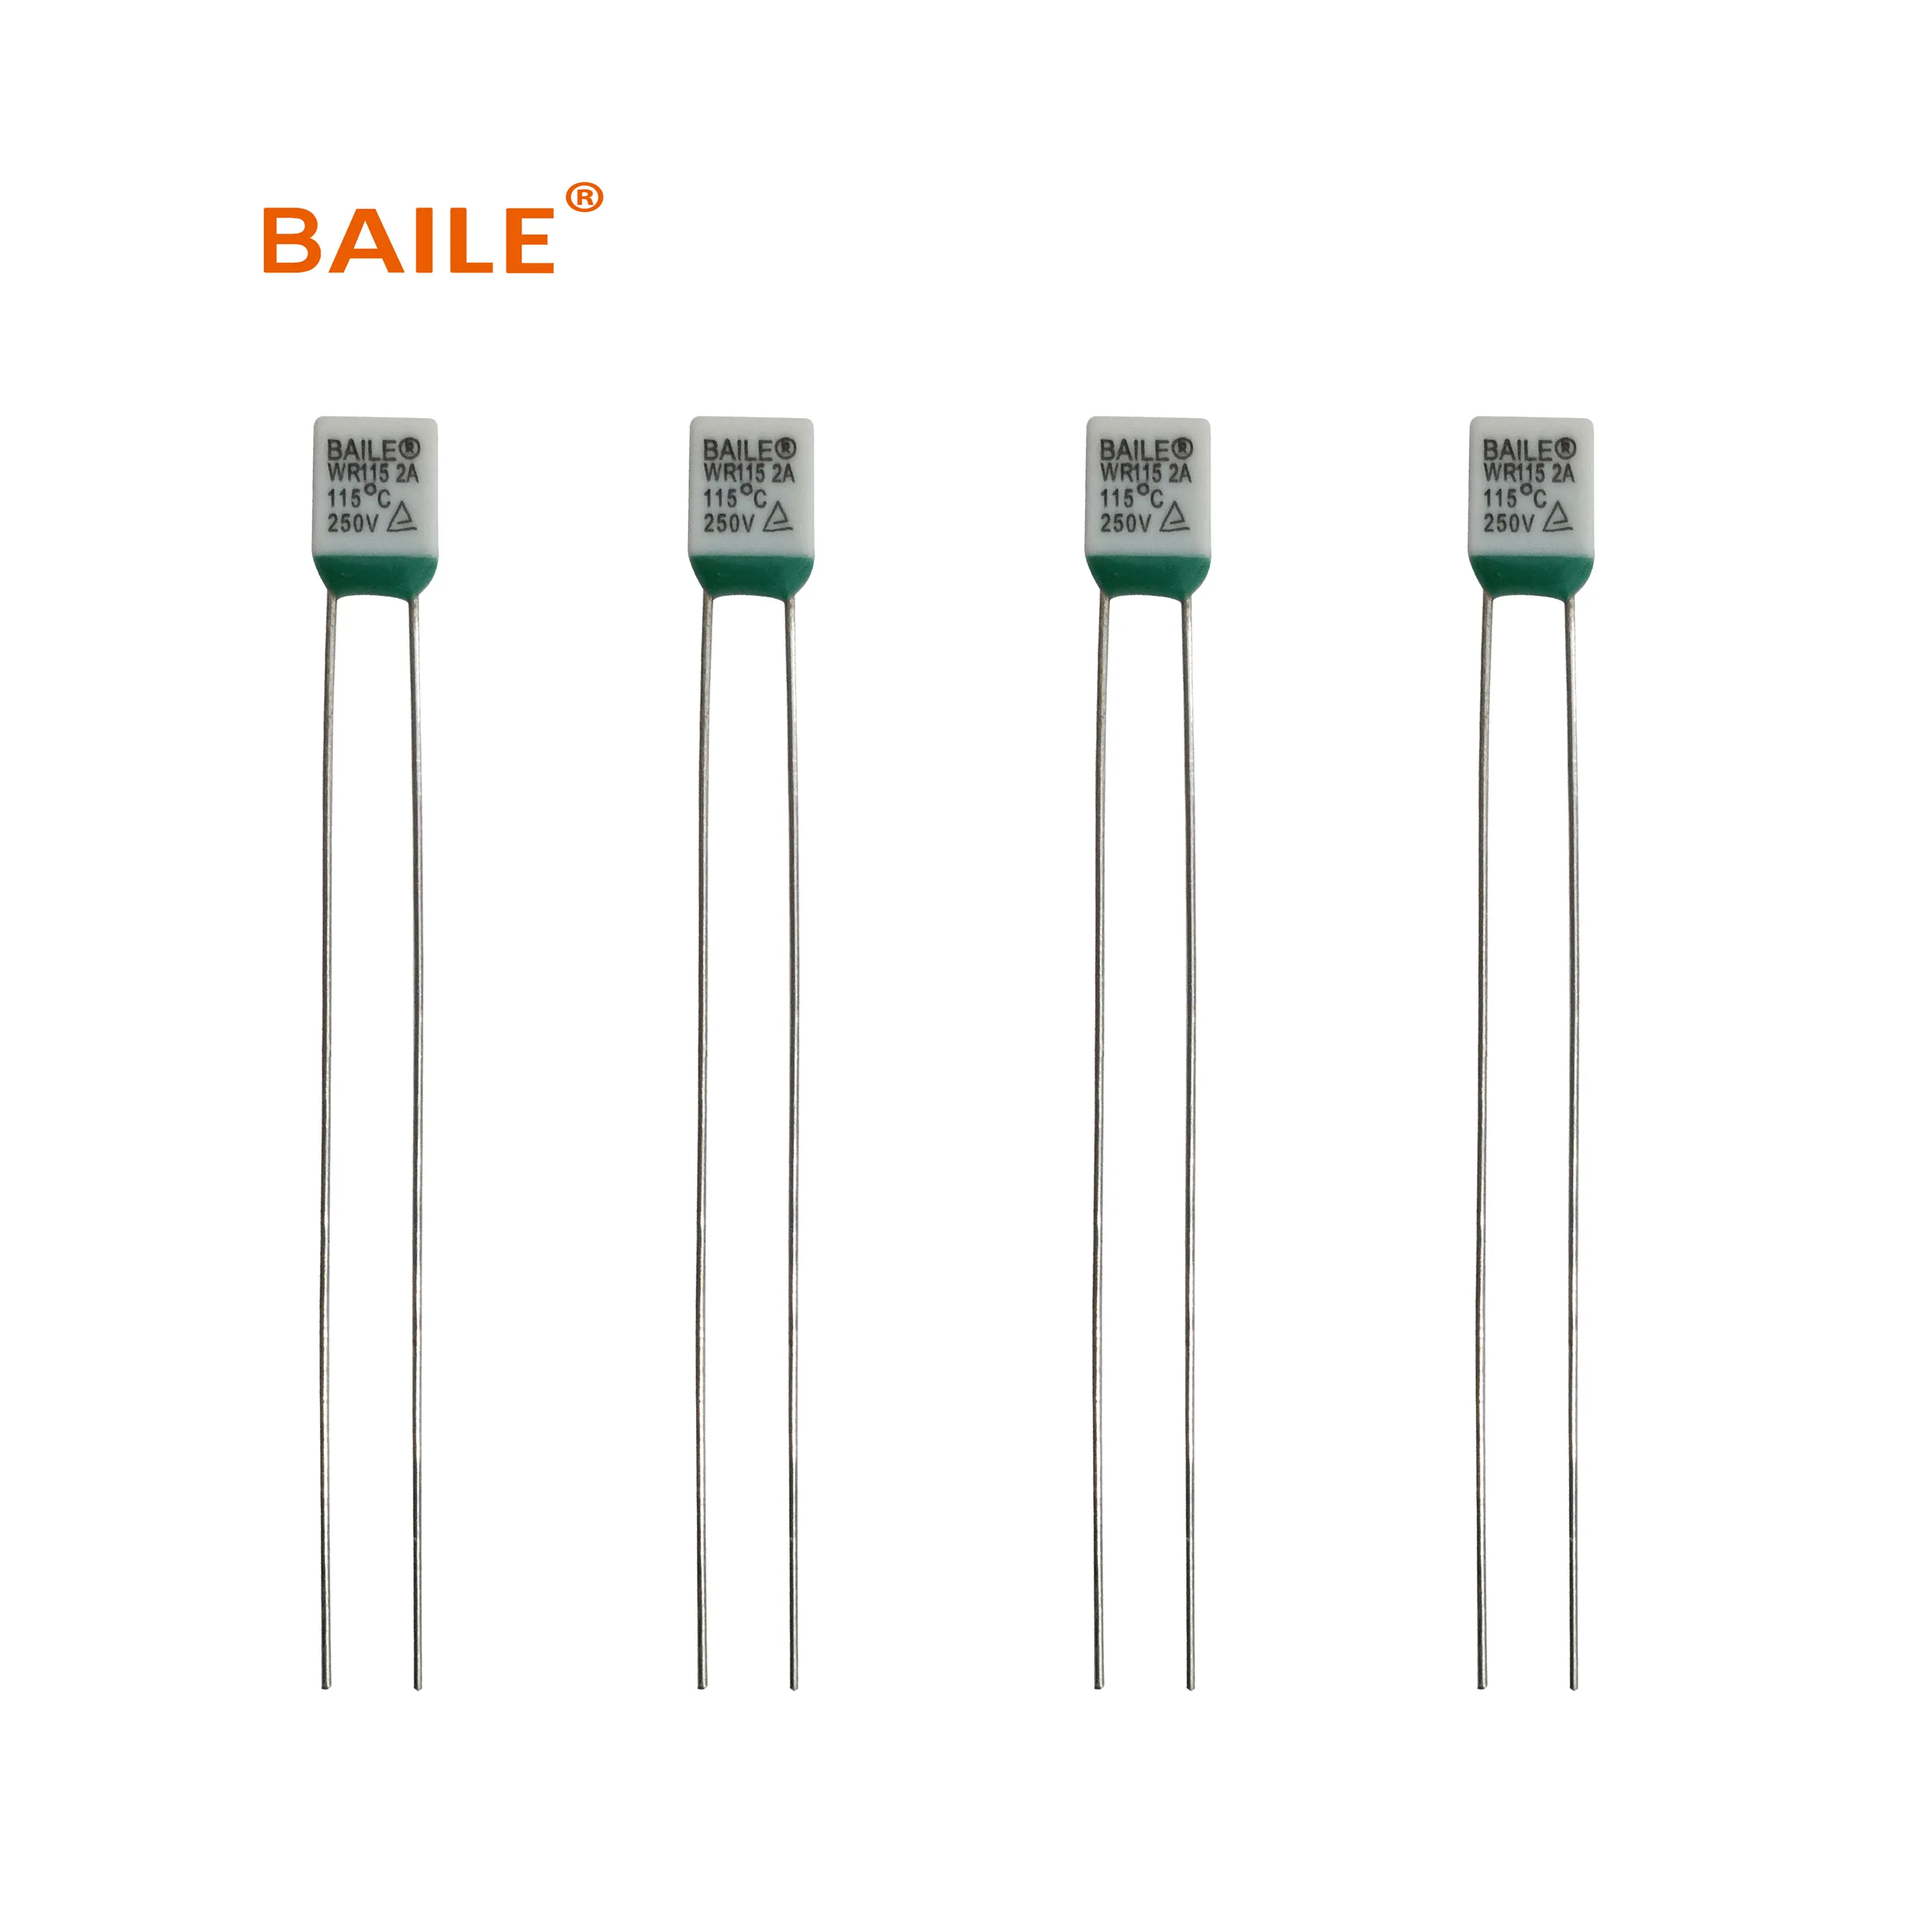 Fusibile termico Baile WR Series 2a 250v per elettrodomestico industriale elettrico